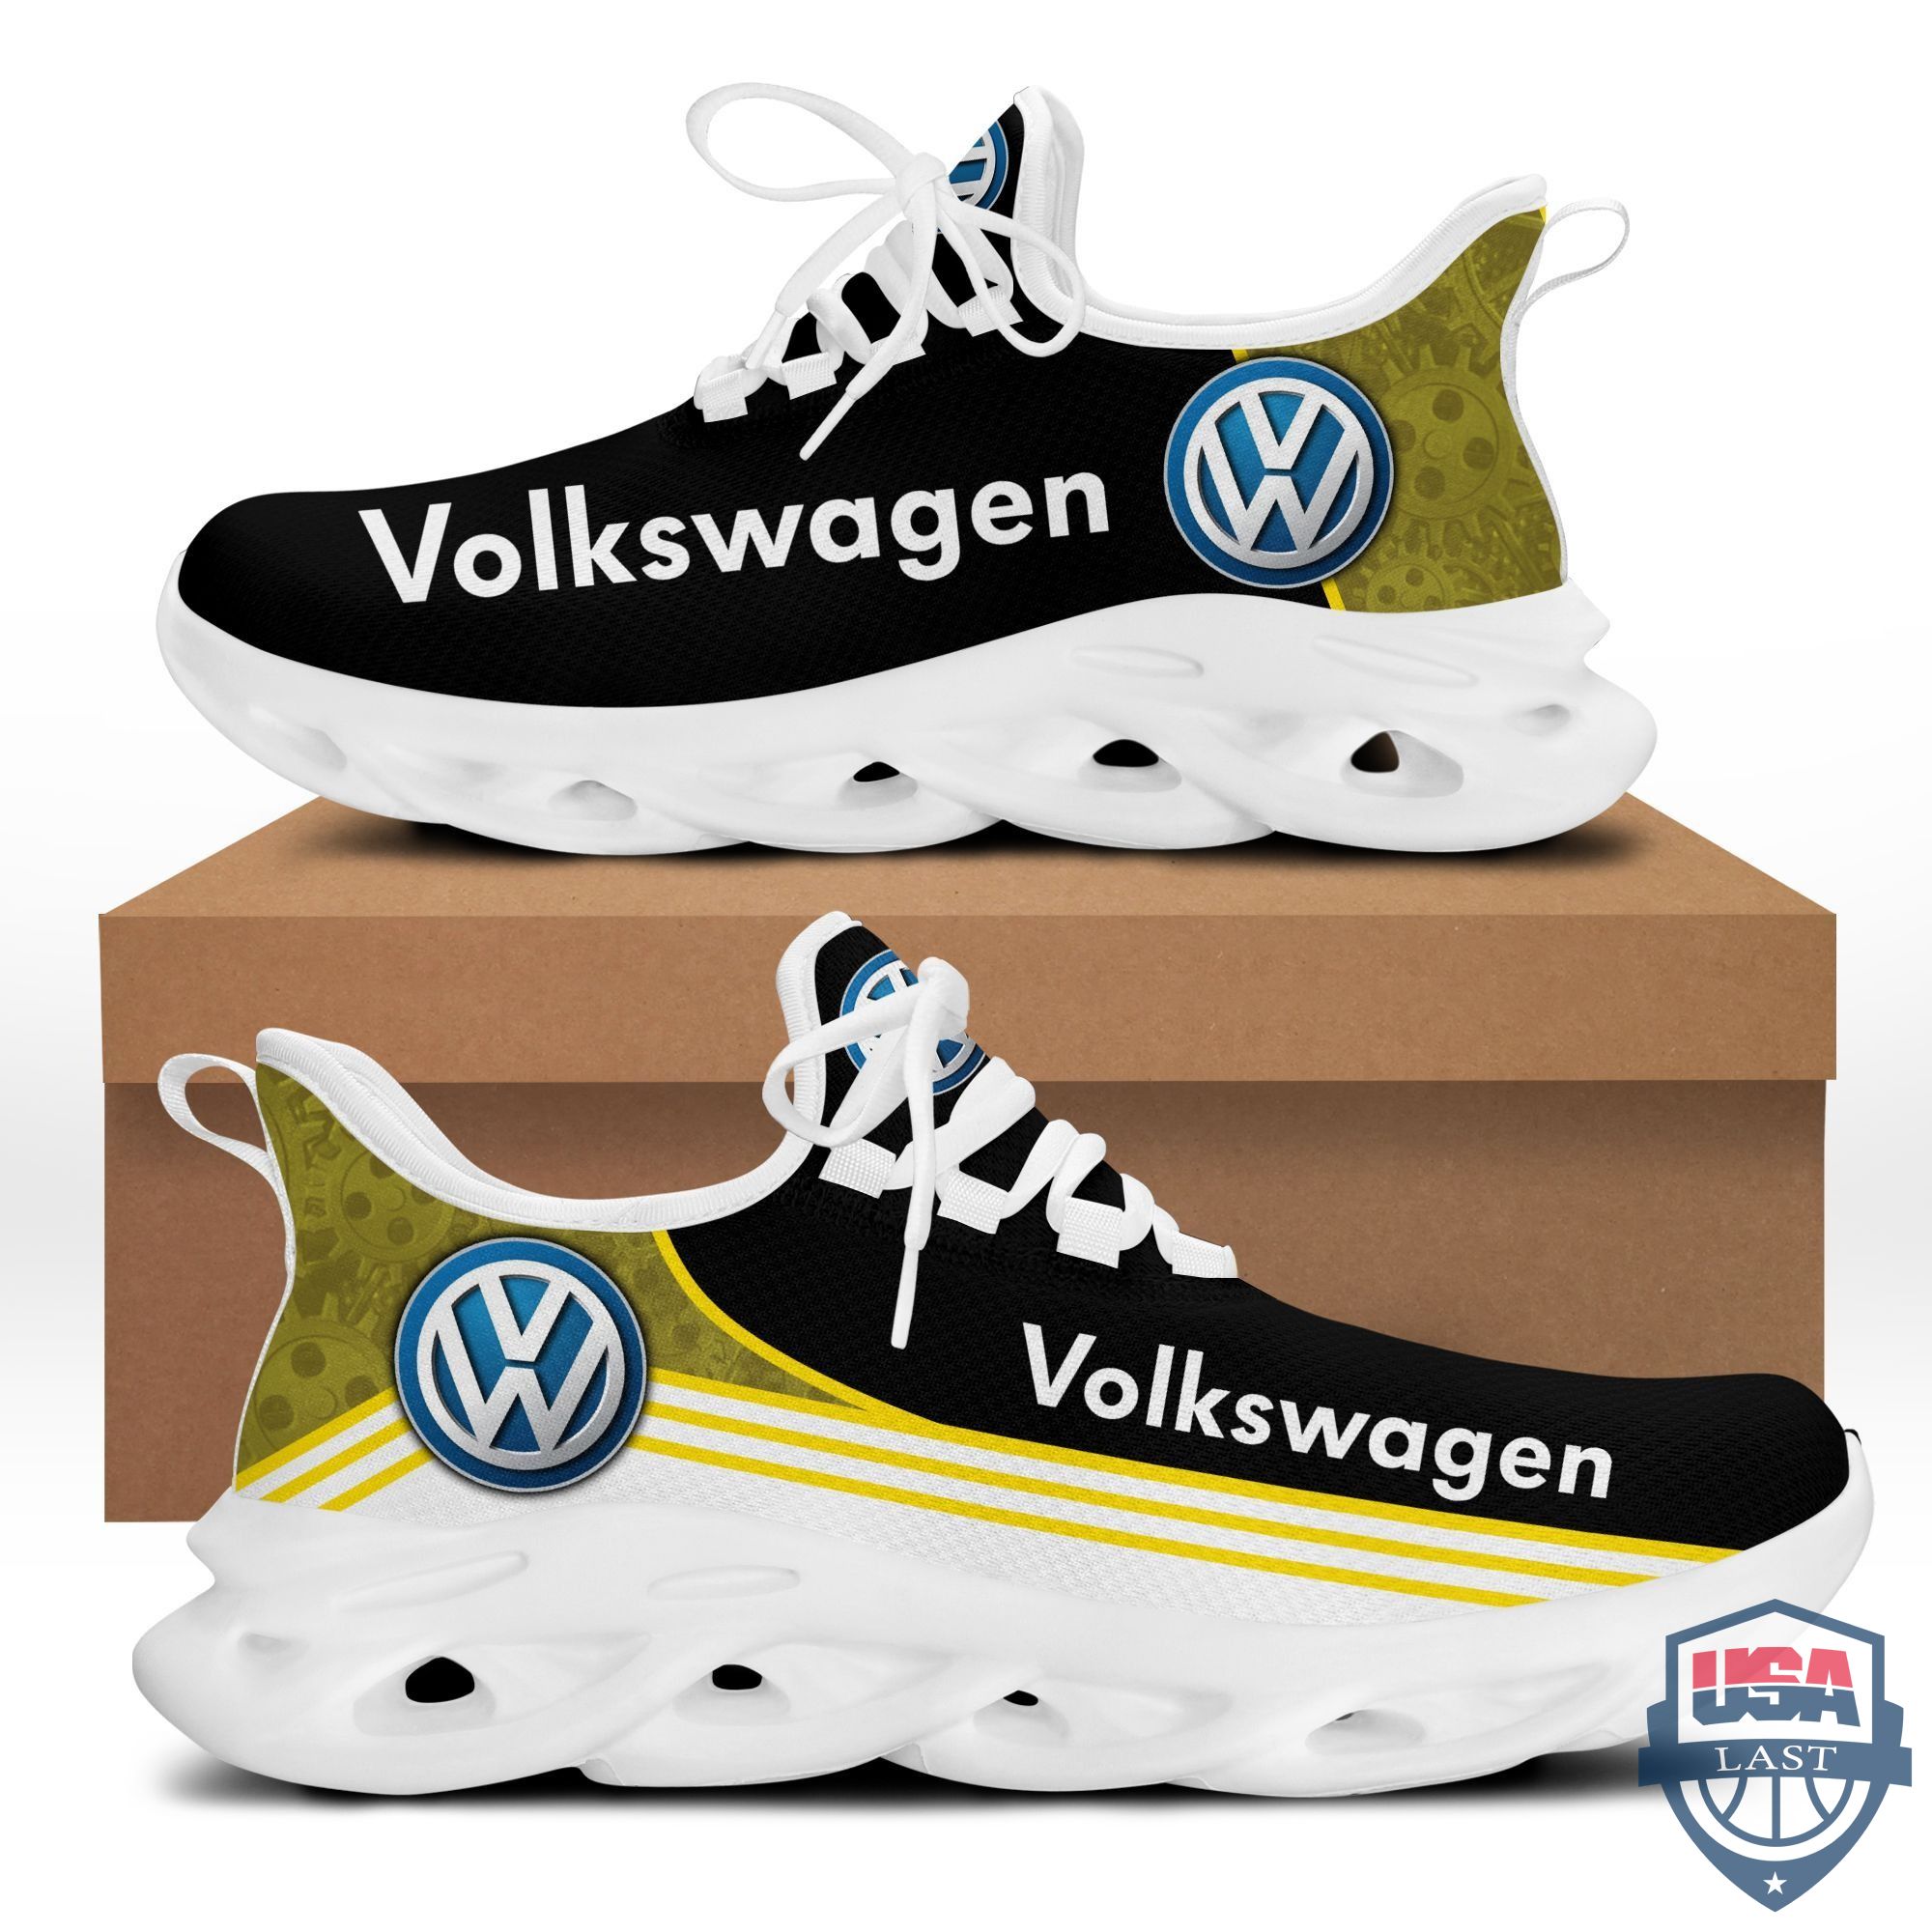 Volkswagen Max Soul Sport Sneakers Yellow Version